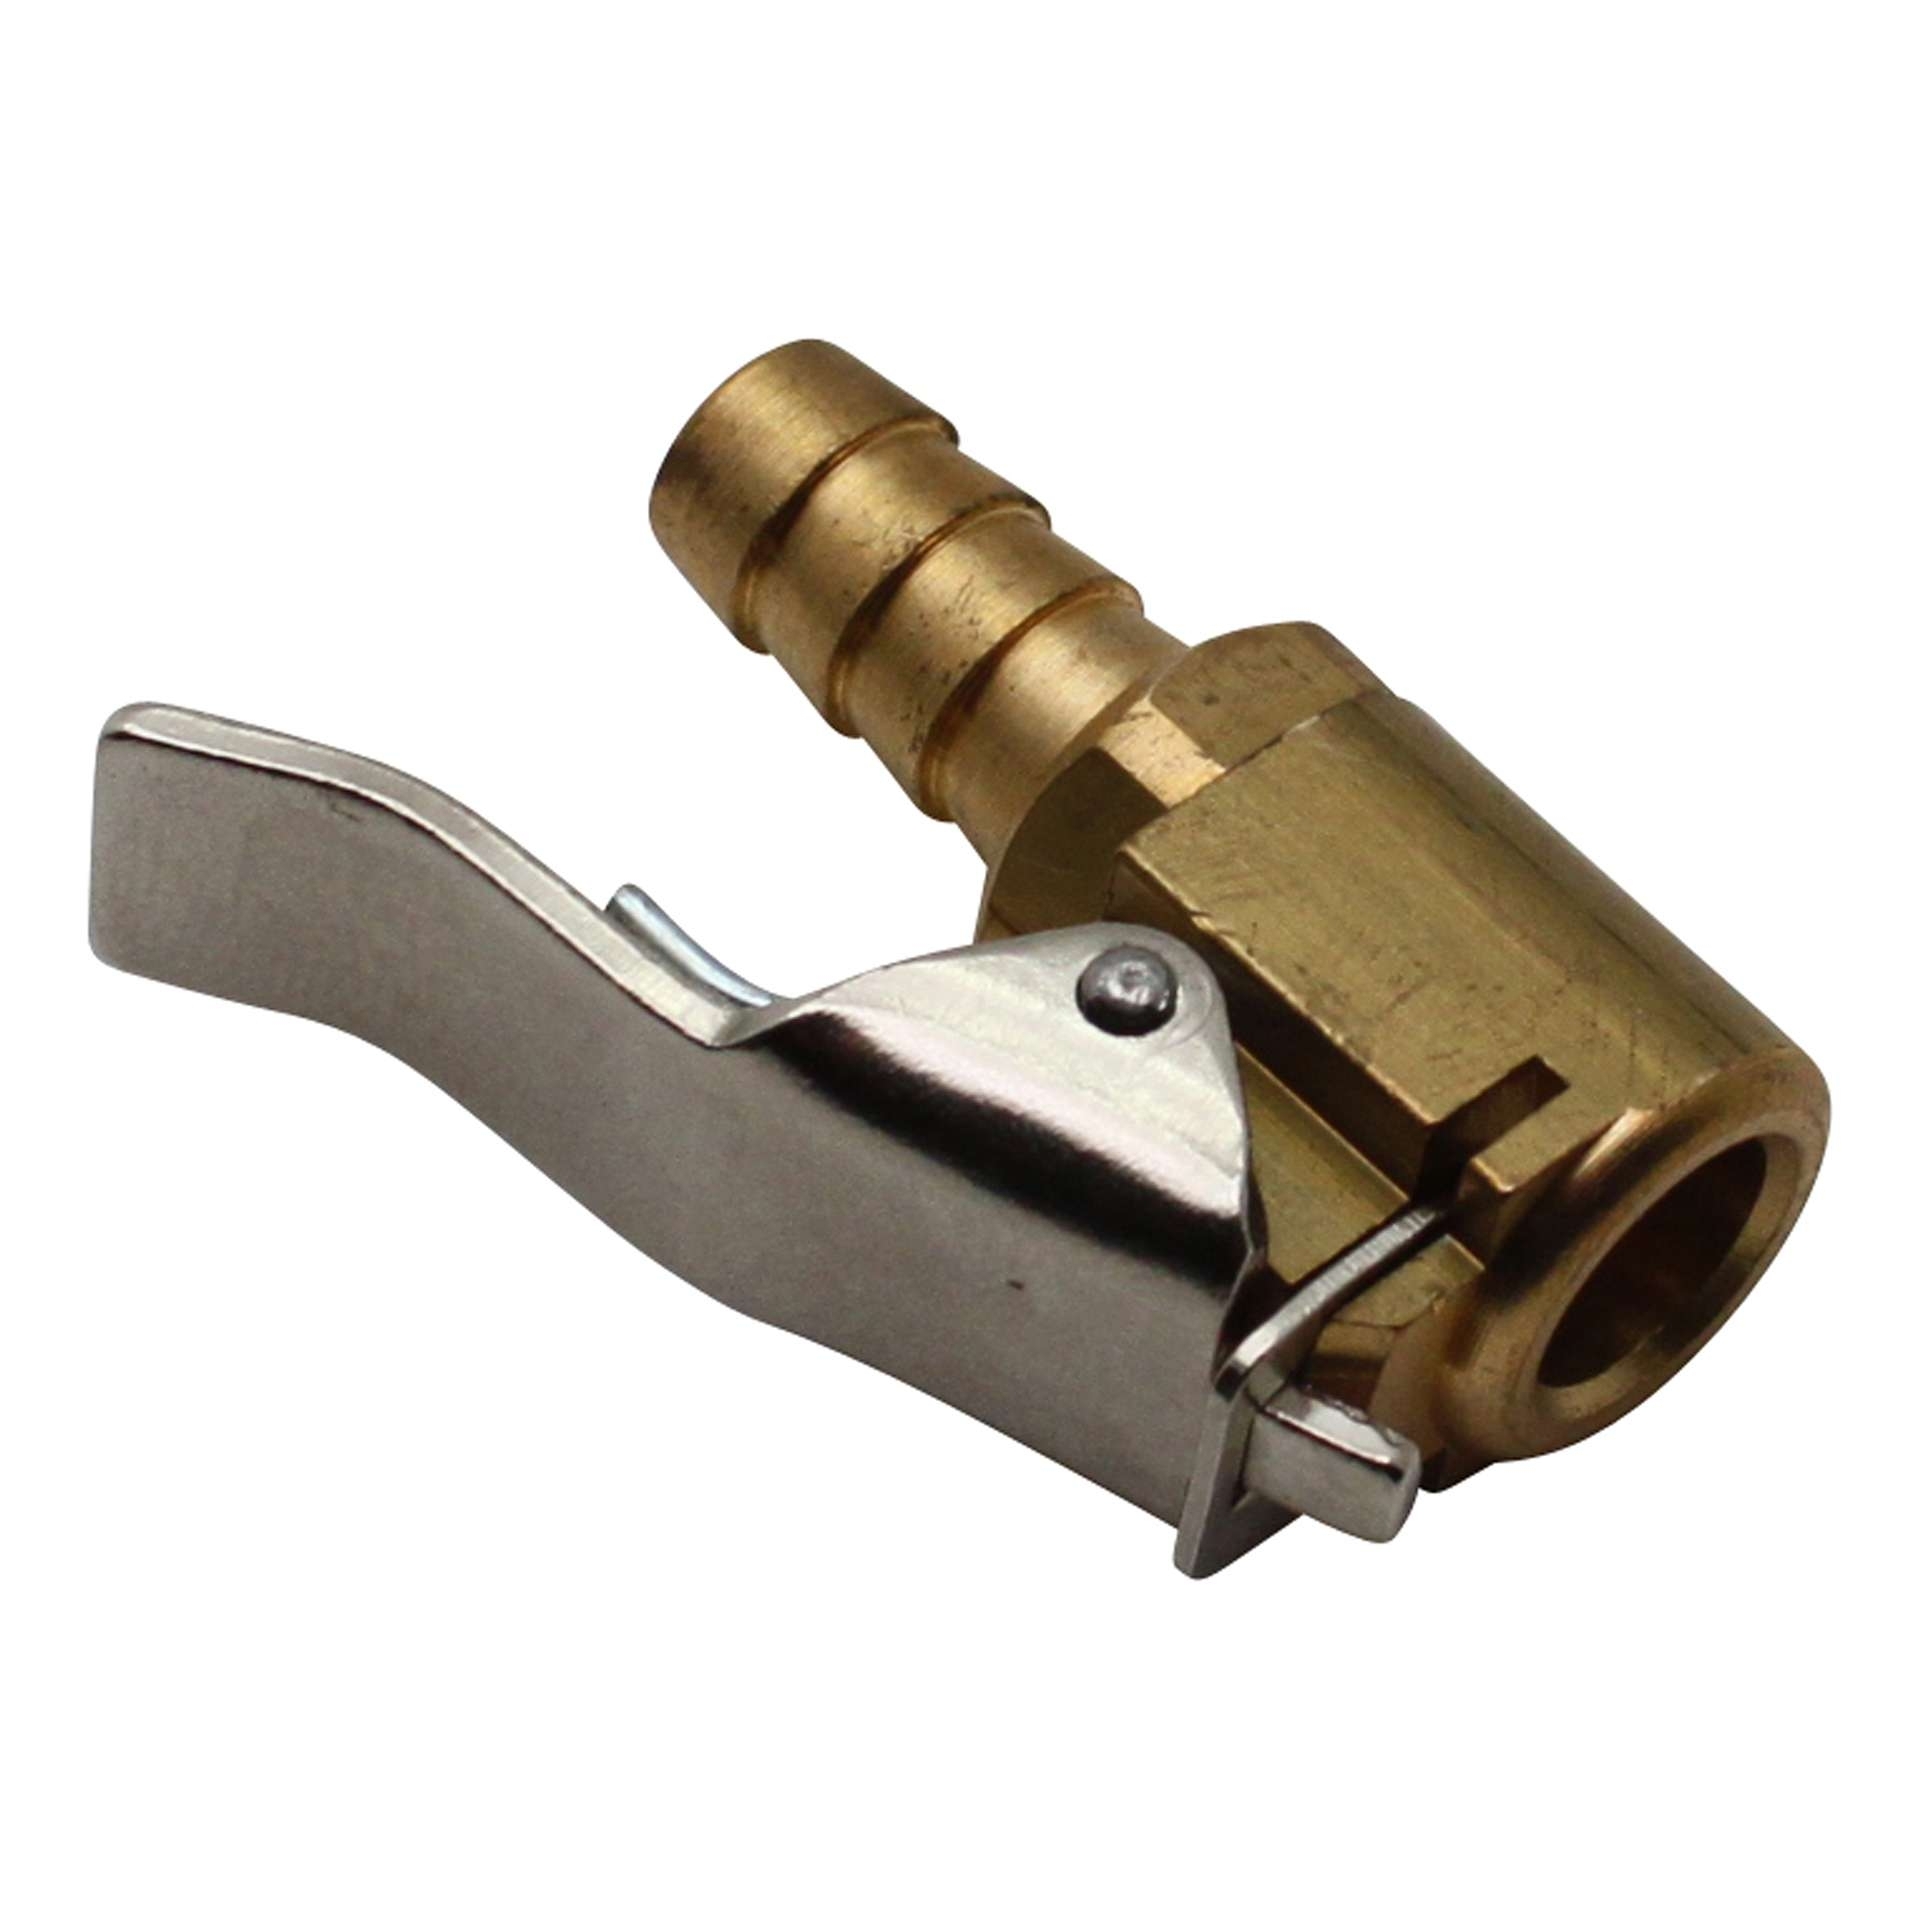 AERZETIX - C54254 - Embout de gonflage à clipser pour tuyau de pompe  compresseur pneumatique - en métal - Ø 8mm - couleur Doré